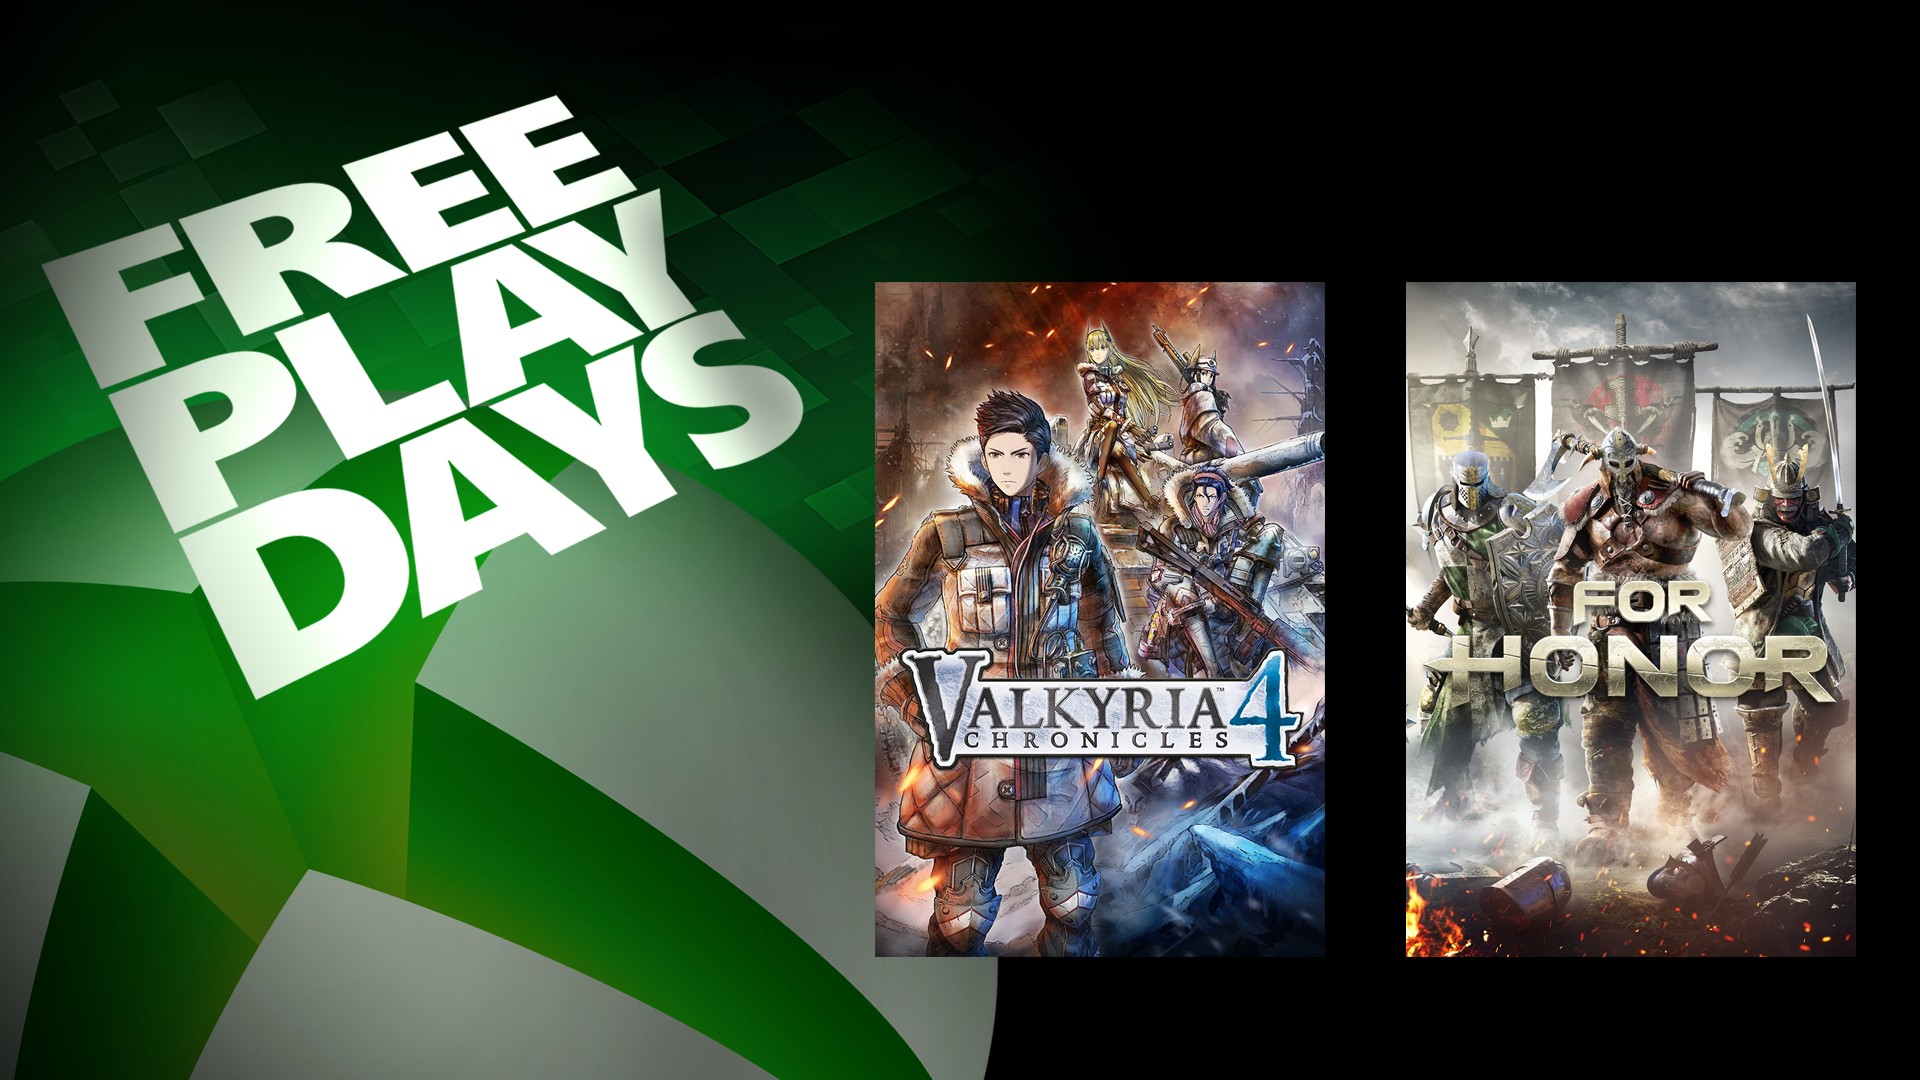 Ya disponibles dos títulos gratuitos de los Free Play Days de esta semana - Los nuevos juegos gratuitos de los Free Play Days de este fin de semana ya están disponibles.